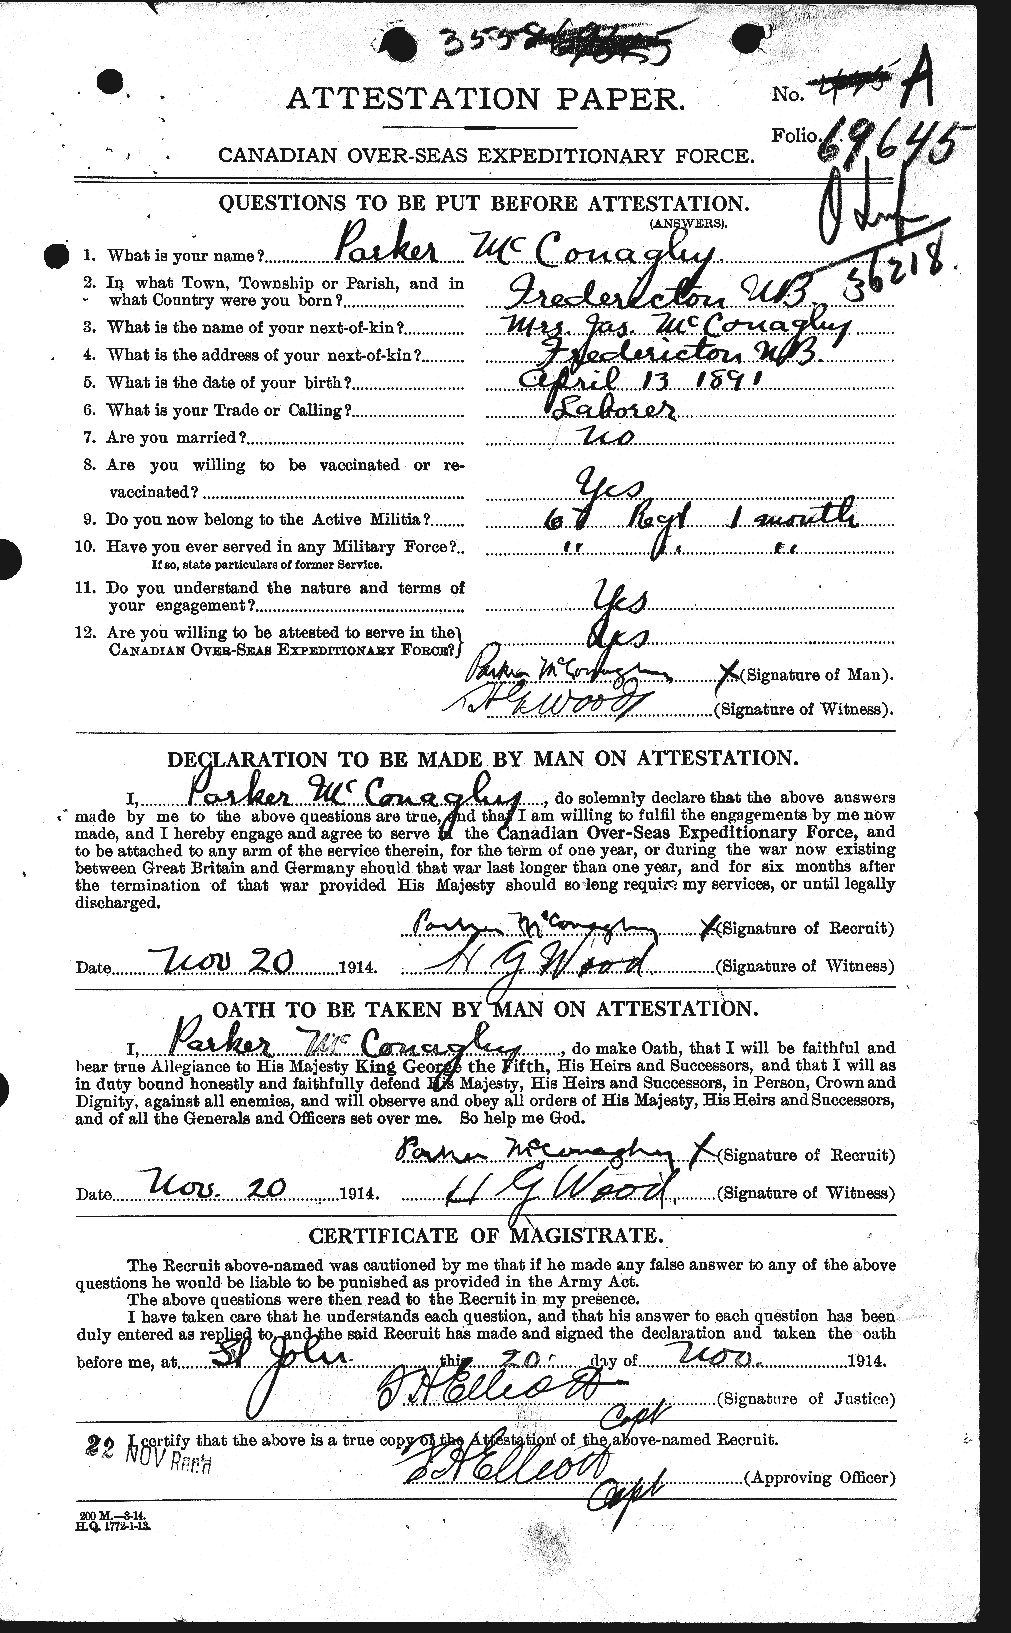 Dossiers du Personnel de la Première Guerre mondiale - CEC 133028a